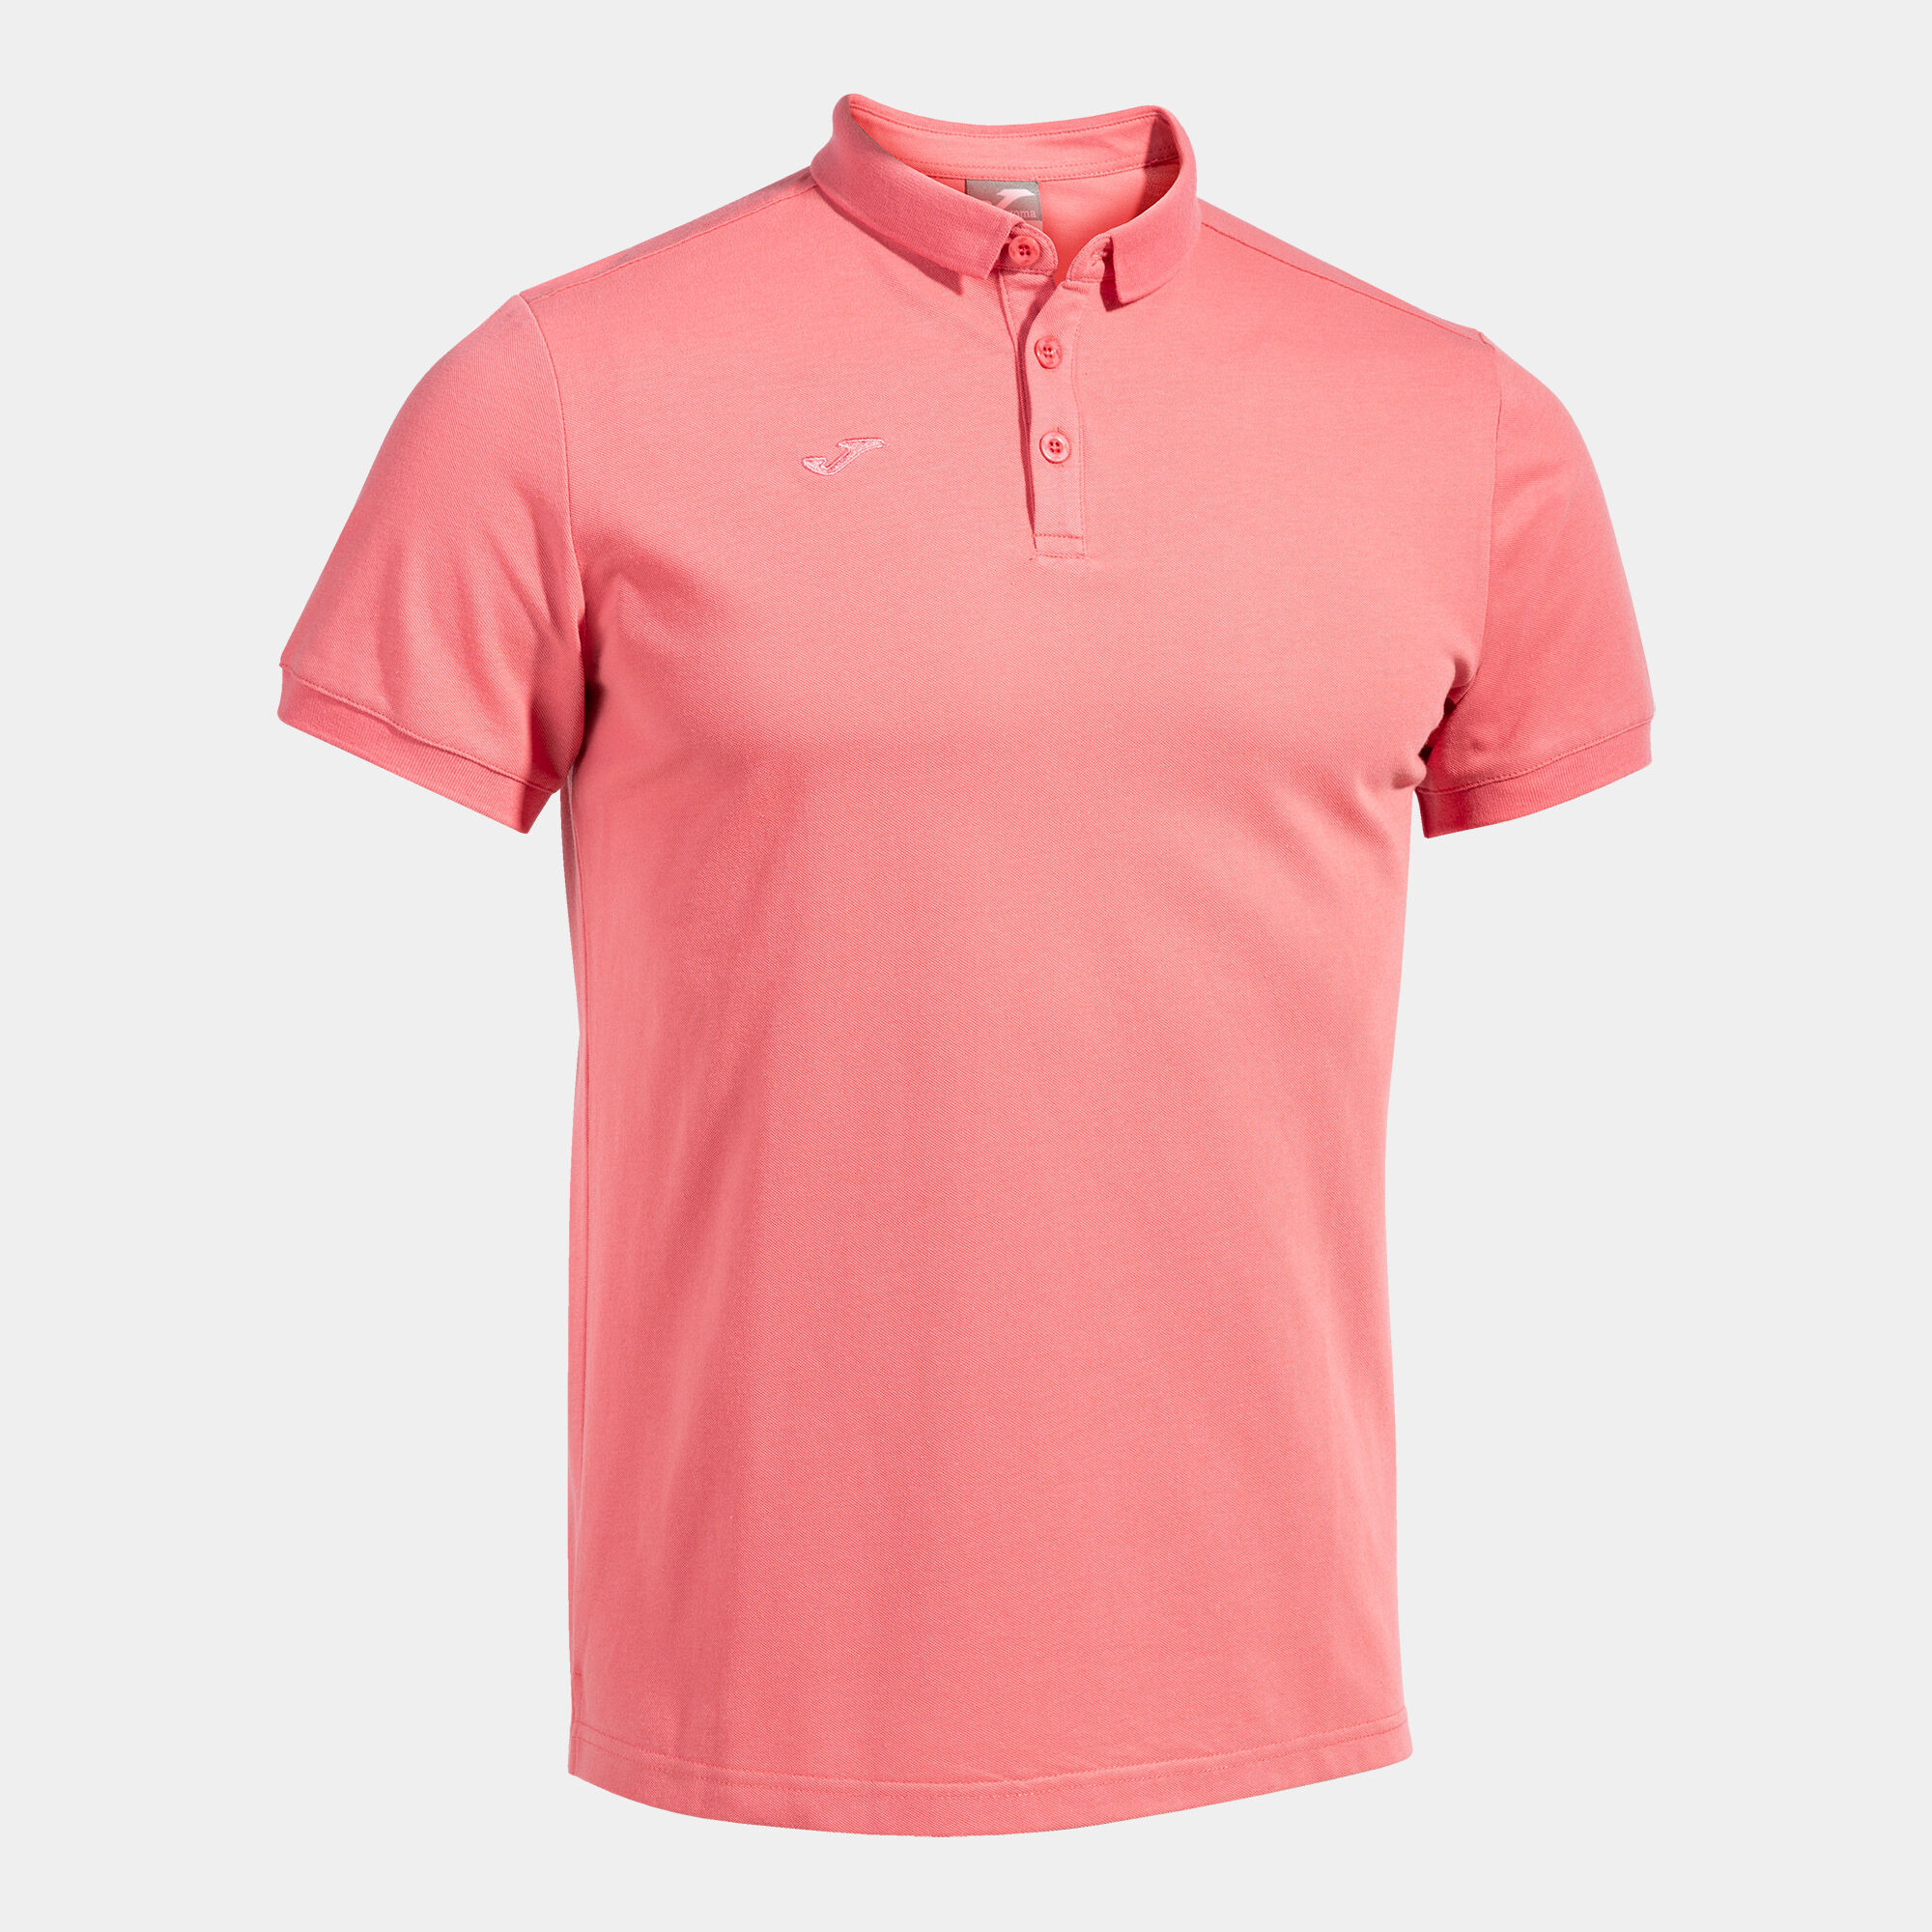 Polo shirt short-sleeve man Pasarela III pink